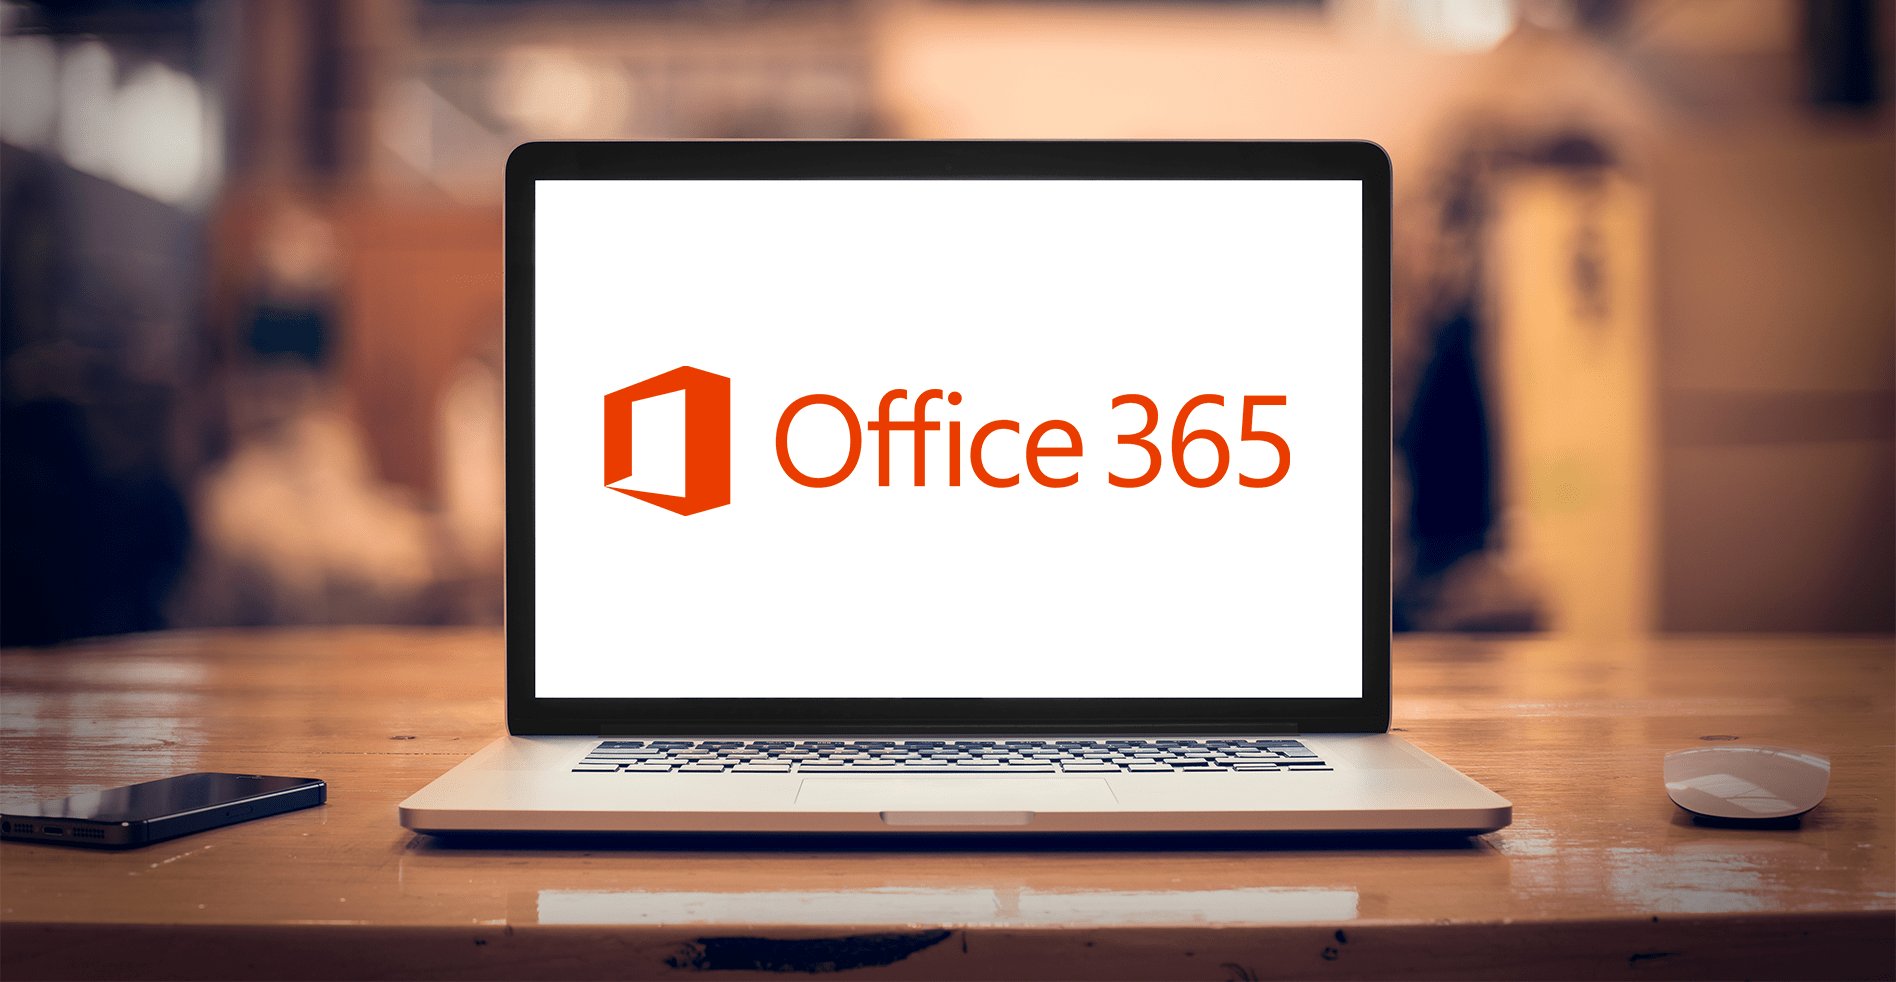 Cara Aktivasi Microsoft Office 365 Gratis